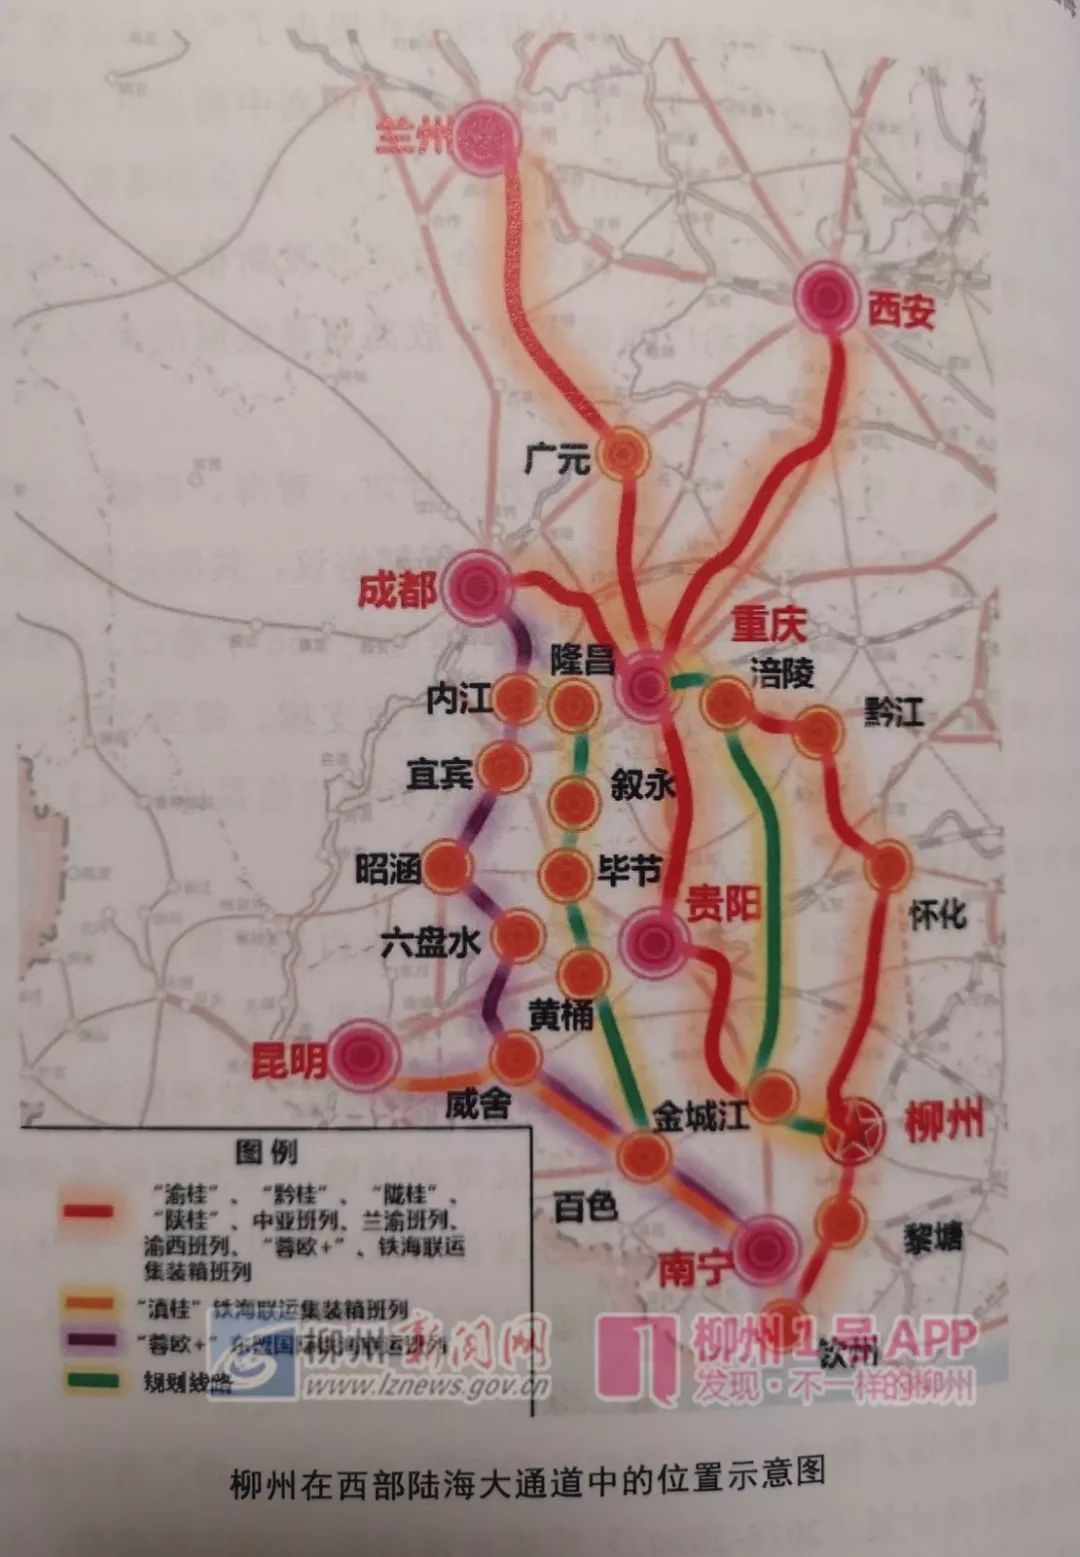 期待柳州至广州铁路再获推进铁路港规划出炉